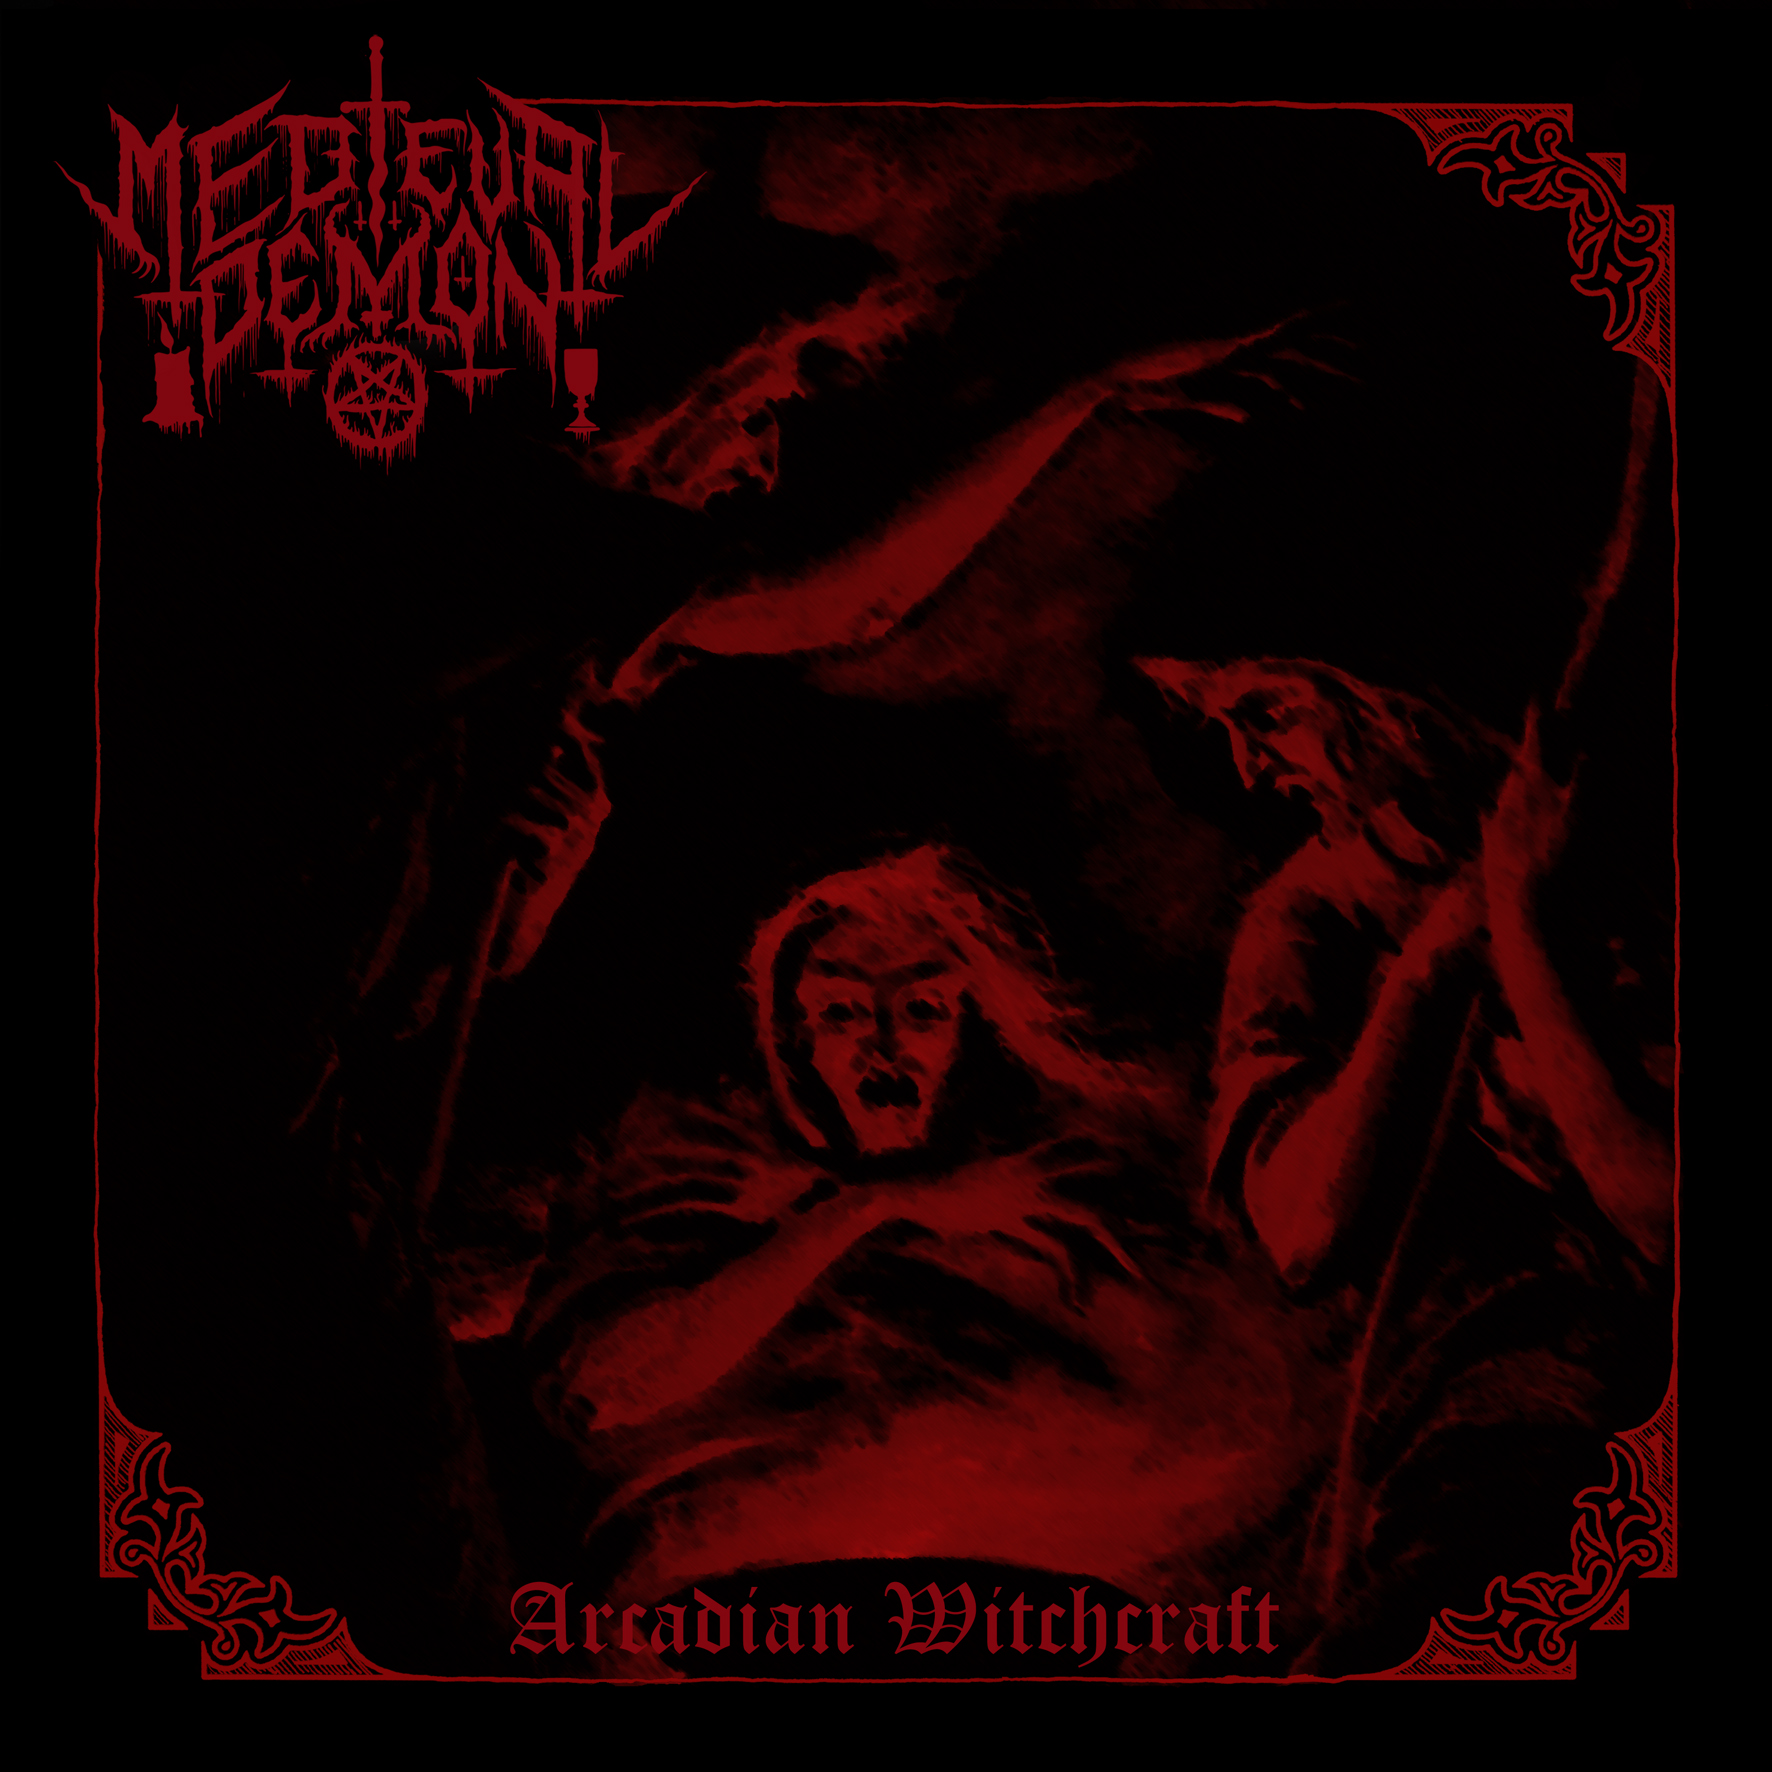 medieval demon – arcadian witchcraft